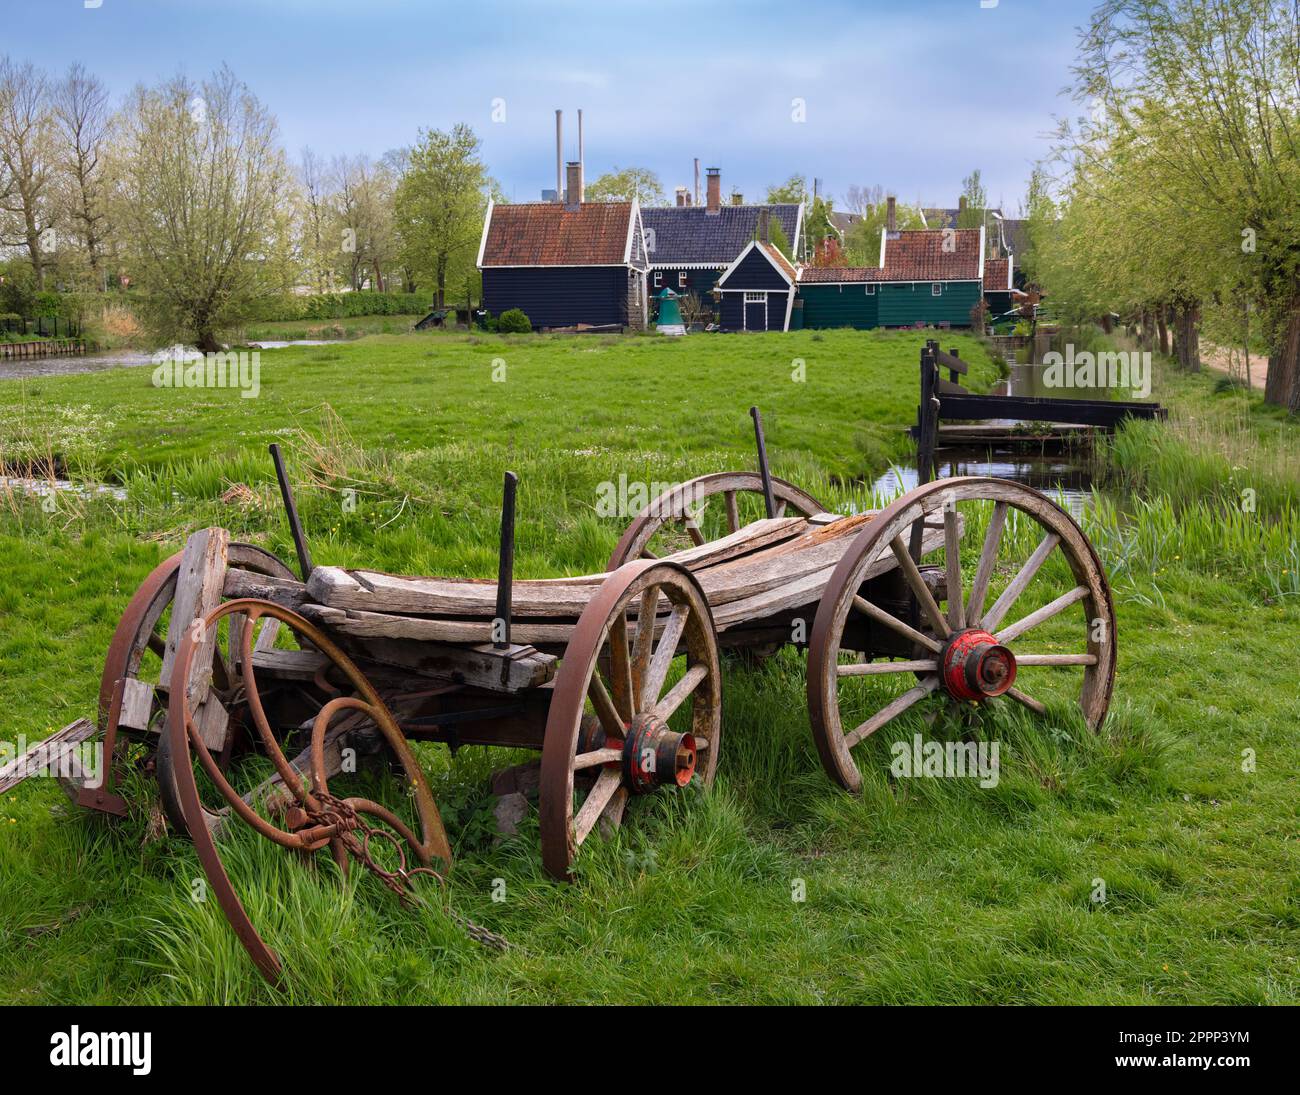 Eine wunderschöne ländliche Landschaft in Hollands Zaanse Schans, mit einem Holzwagen und einem Gebäude umgeben von Feldern mit grünem Gras und Pflanzen. Stockfoto